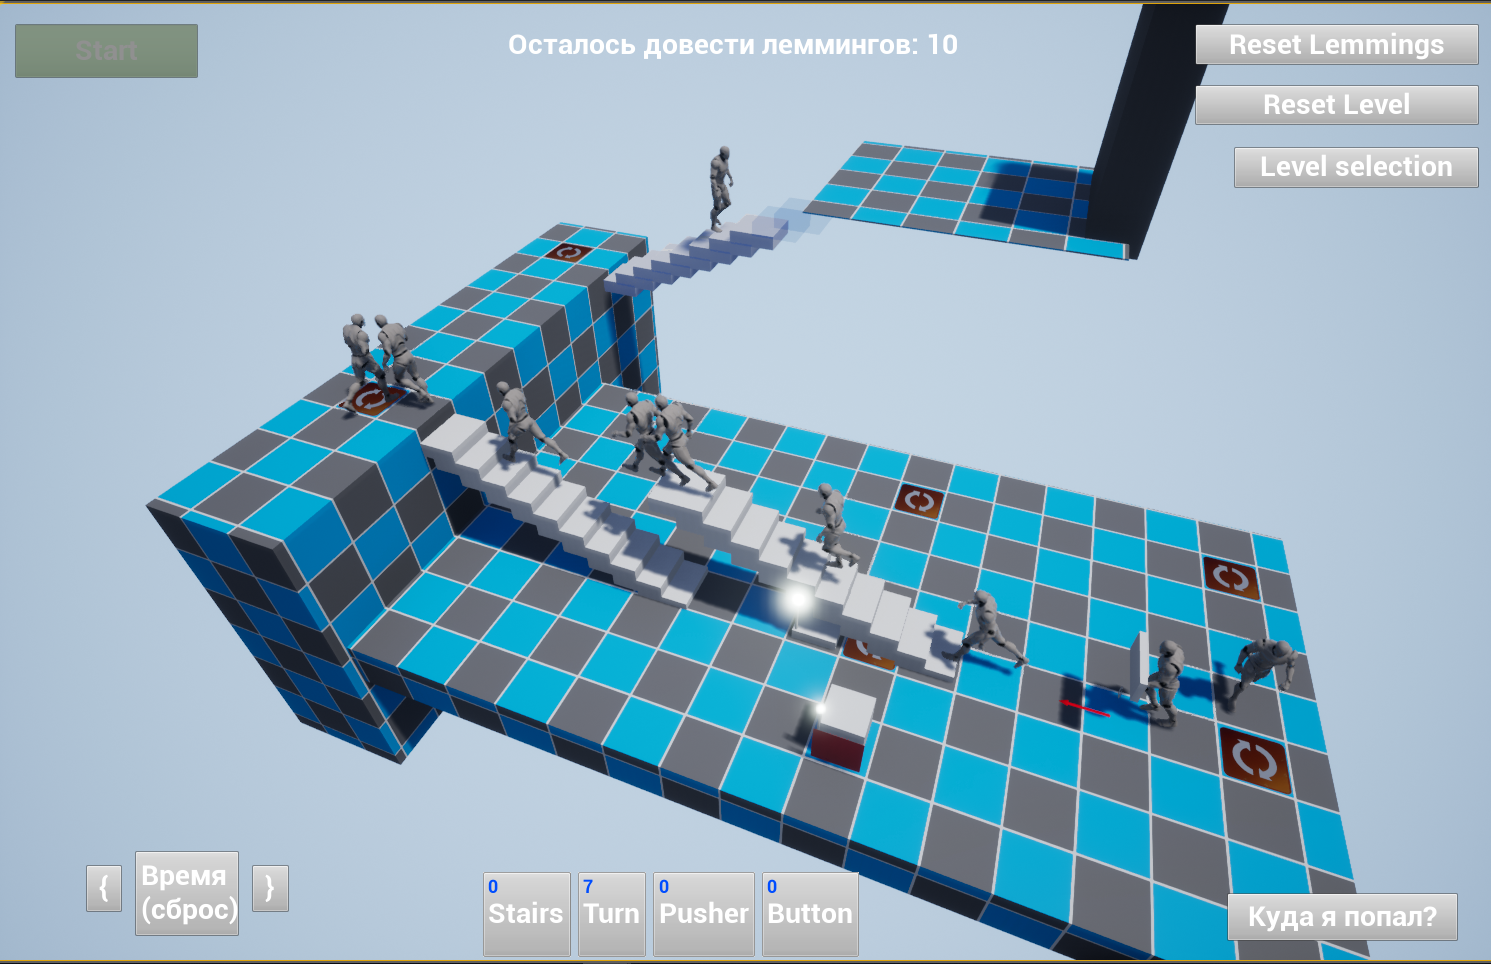 Lemmings on mechanisms in 4 hours - My, Gamedev, Unreal Engine 4, Blueprint, Prototype, , Lemmings, Mechanism, Games, Video, Longpost